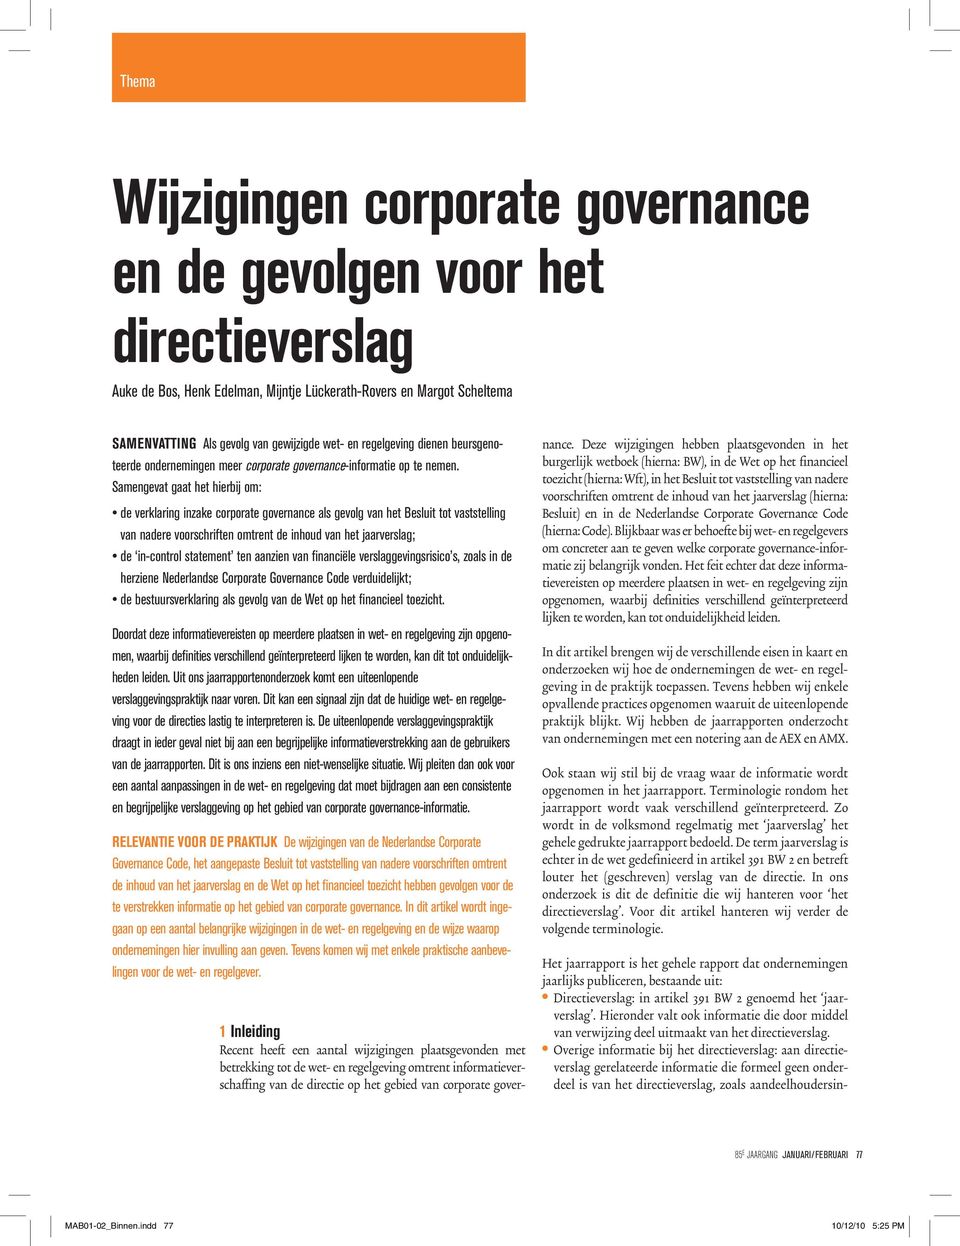 Samengevat gaat het hierbij om: de verklaring inzake corporate governance als gevolg van het Besluit tot vaststelling van nadere voorschriften omtrent de inhoud van het jaarverslag; de in-control